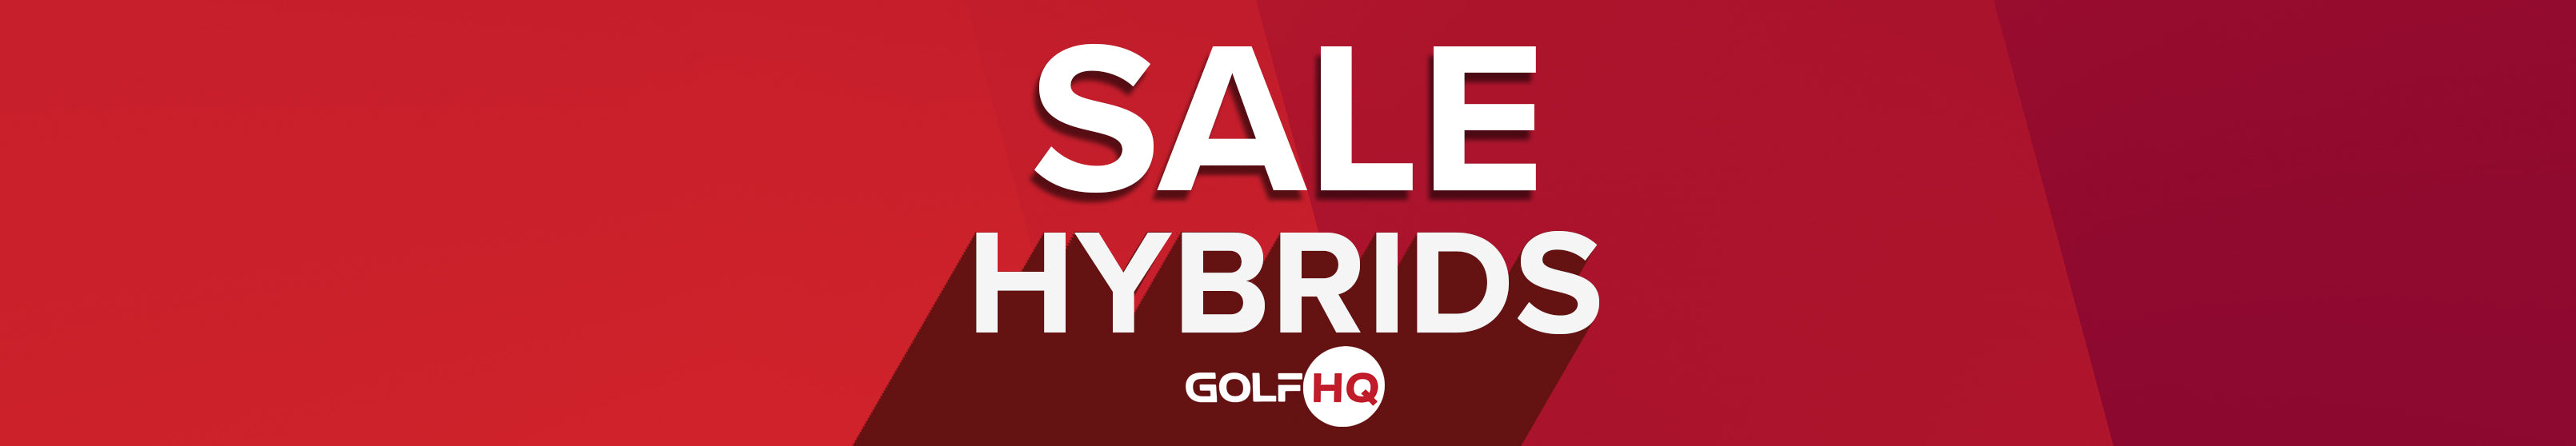 Sale Hybrids